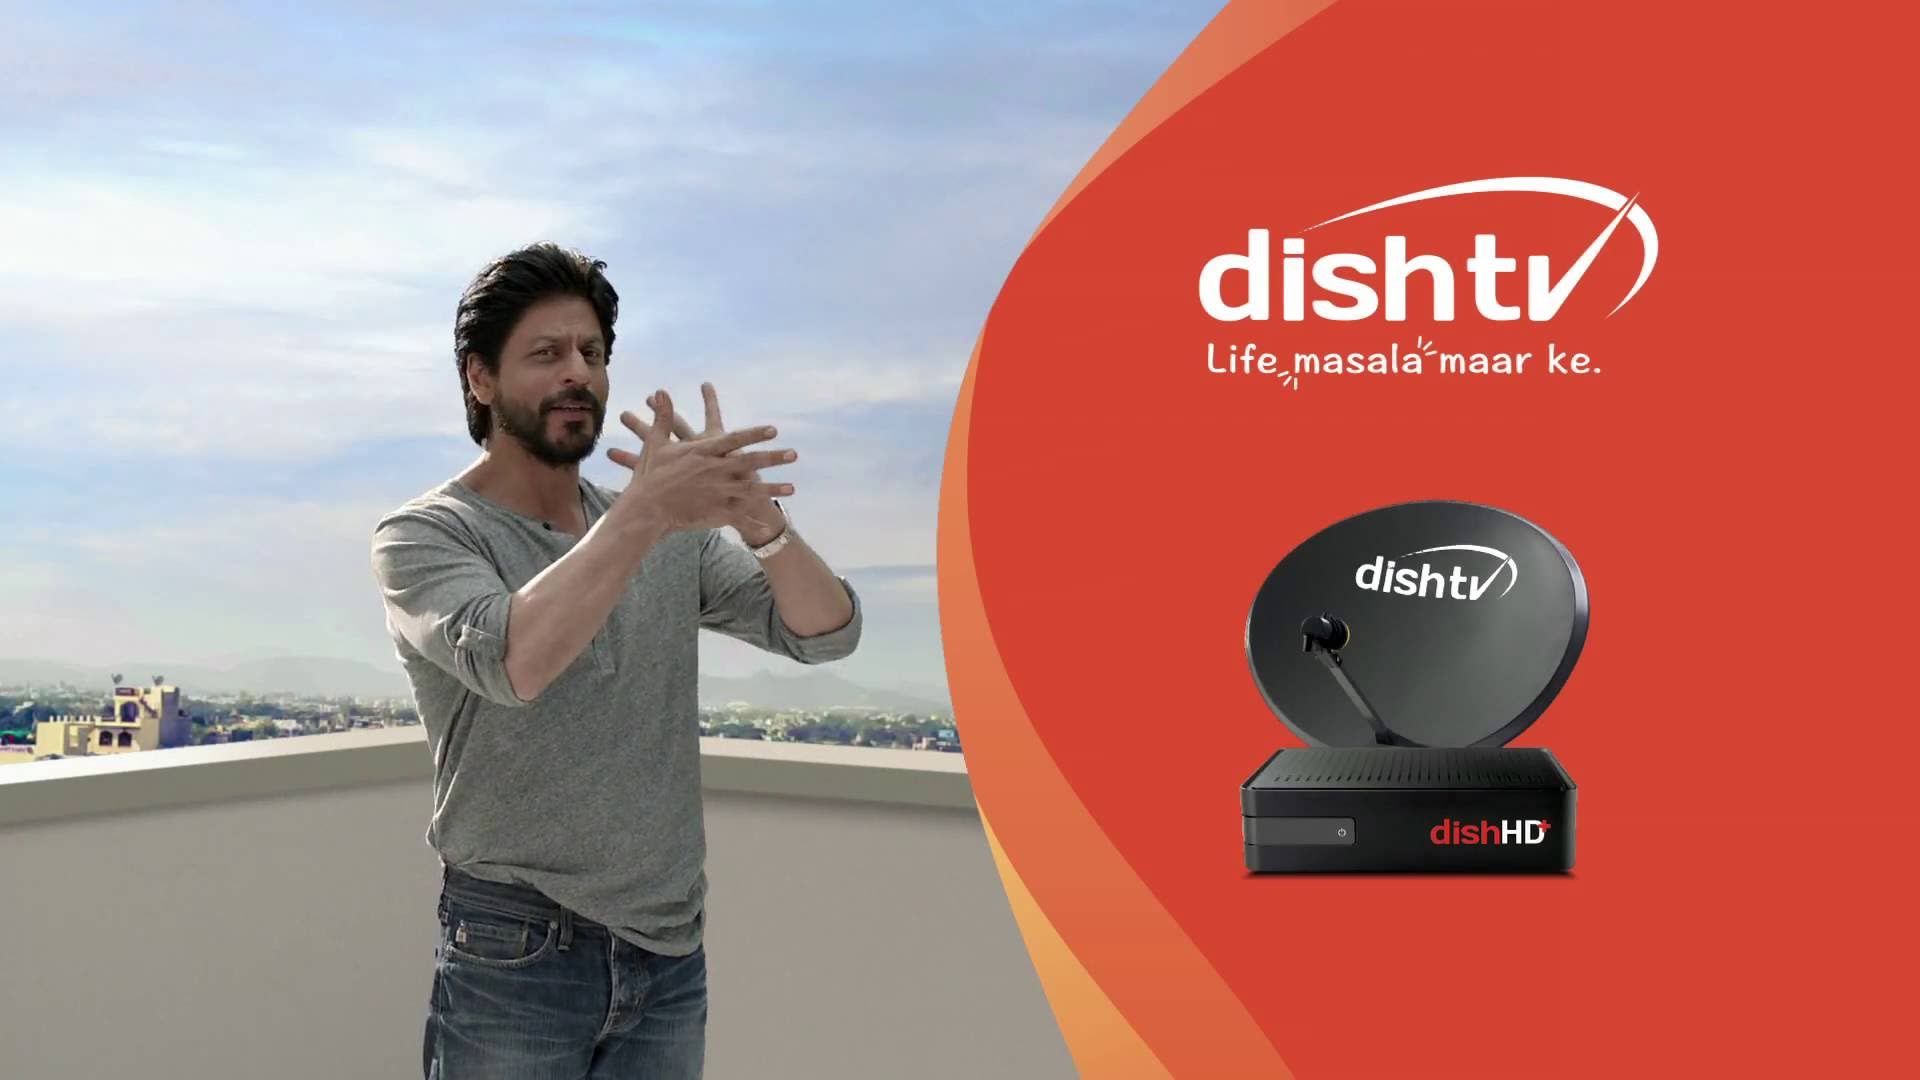 DishTV-Life Masala Maar Ke - YouTube